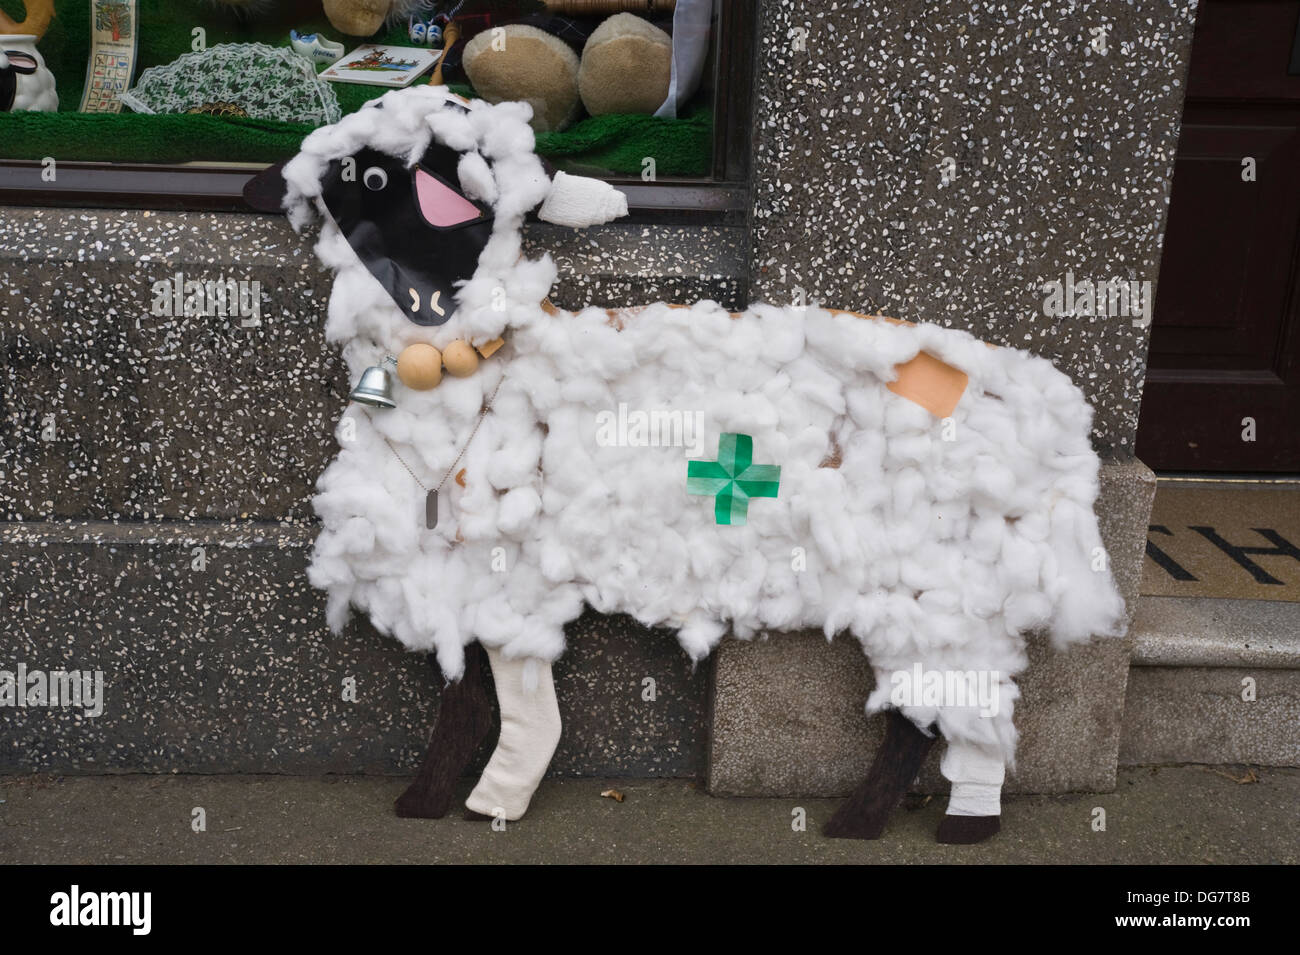 En dehors des moutons au cours de pharmacie Mouton Llandovery Festival, Llandovery, Carmarthenshire, au sud-ouest du pays de Galles, Royaume-Uni Banque D'Images